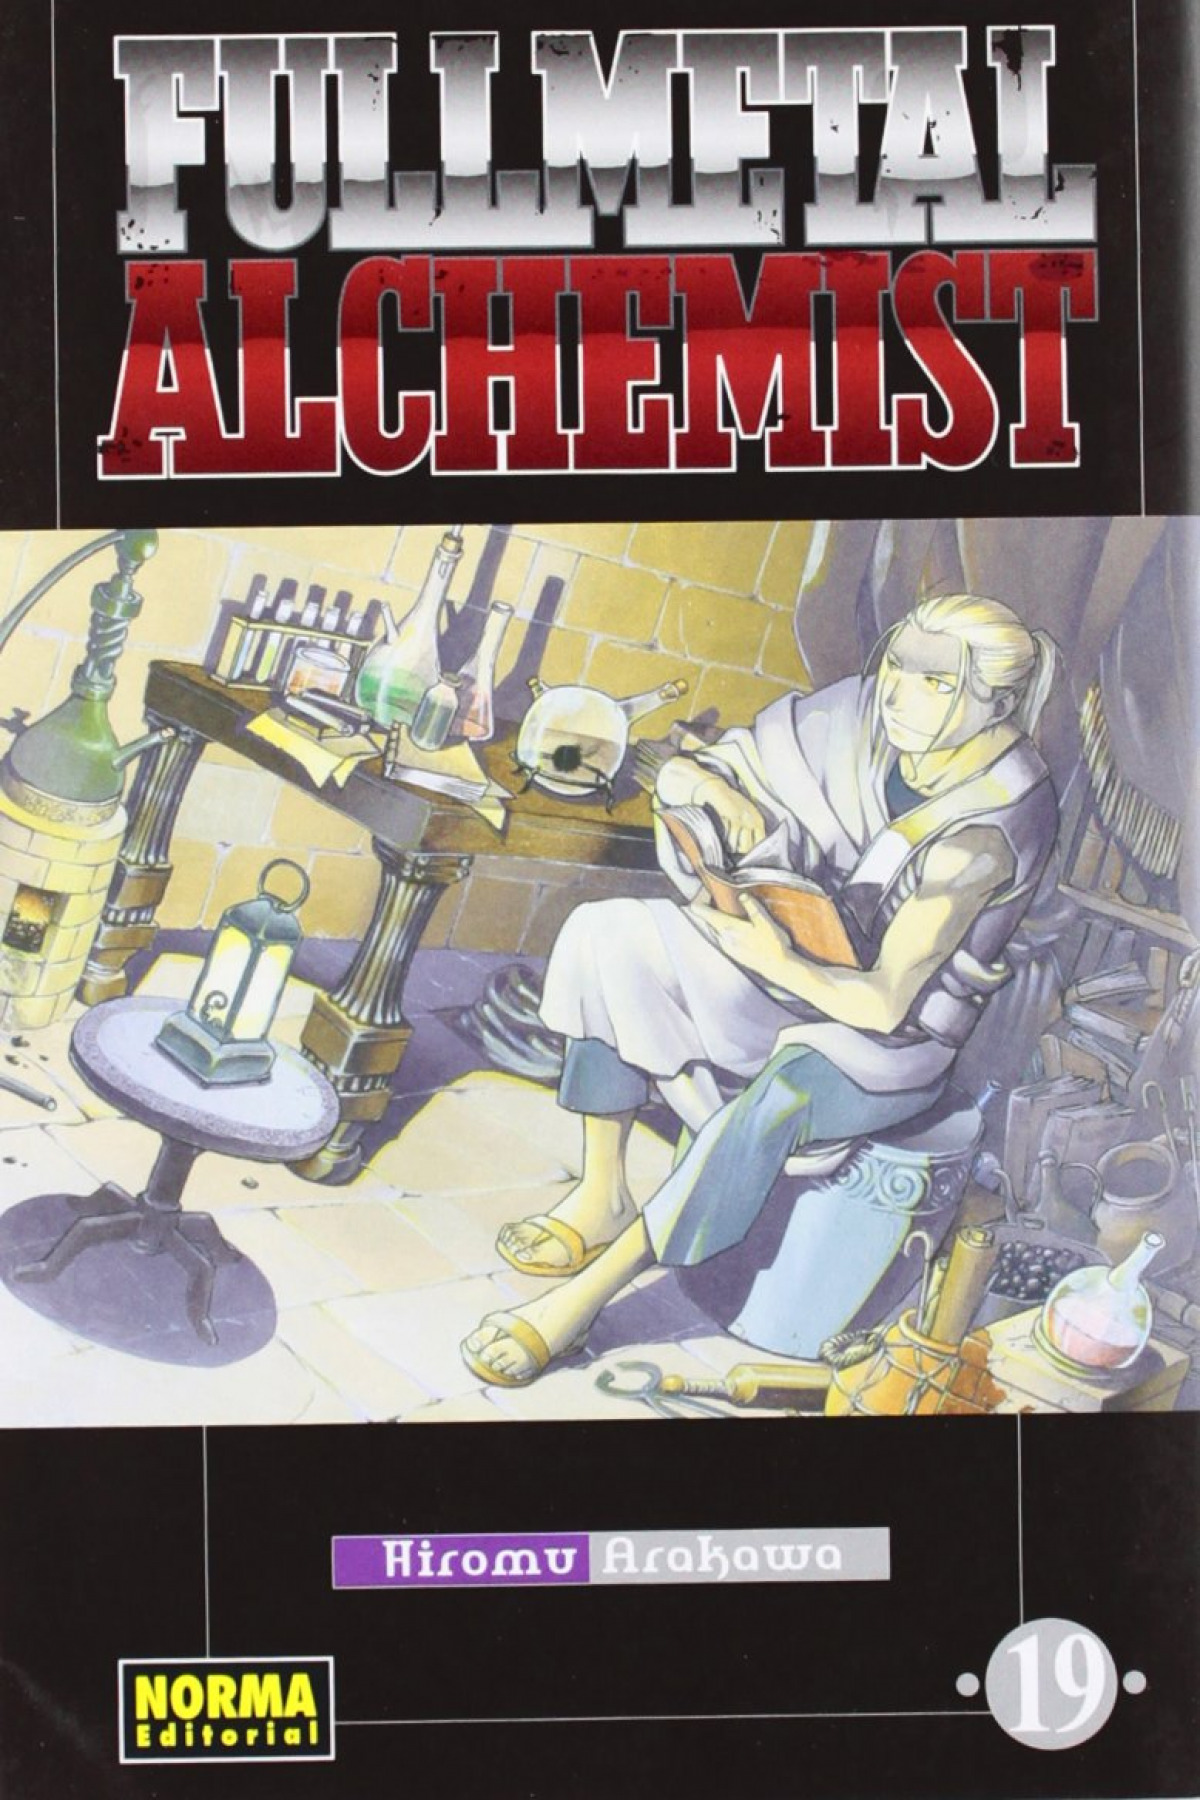 Fullmetal alchemist 19 - Arakawa, Hiromu